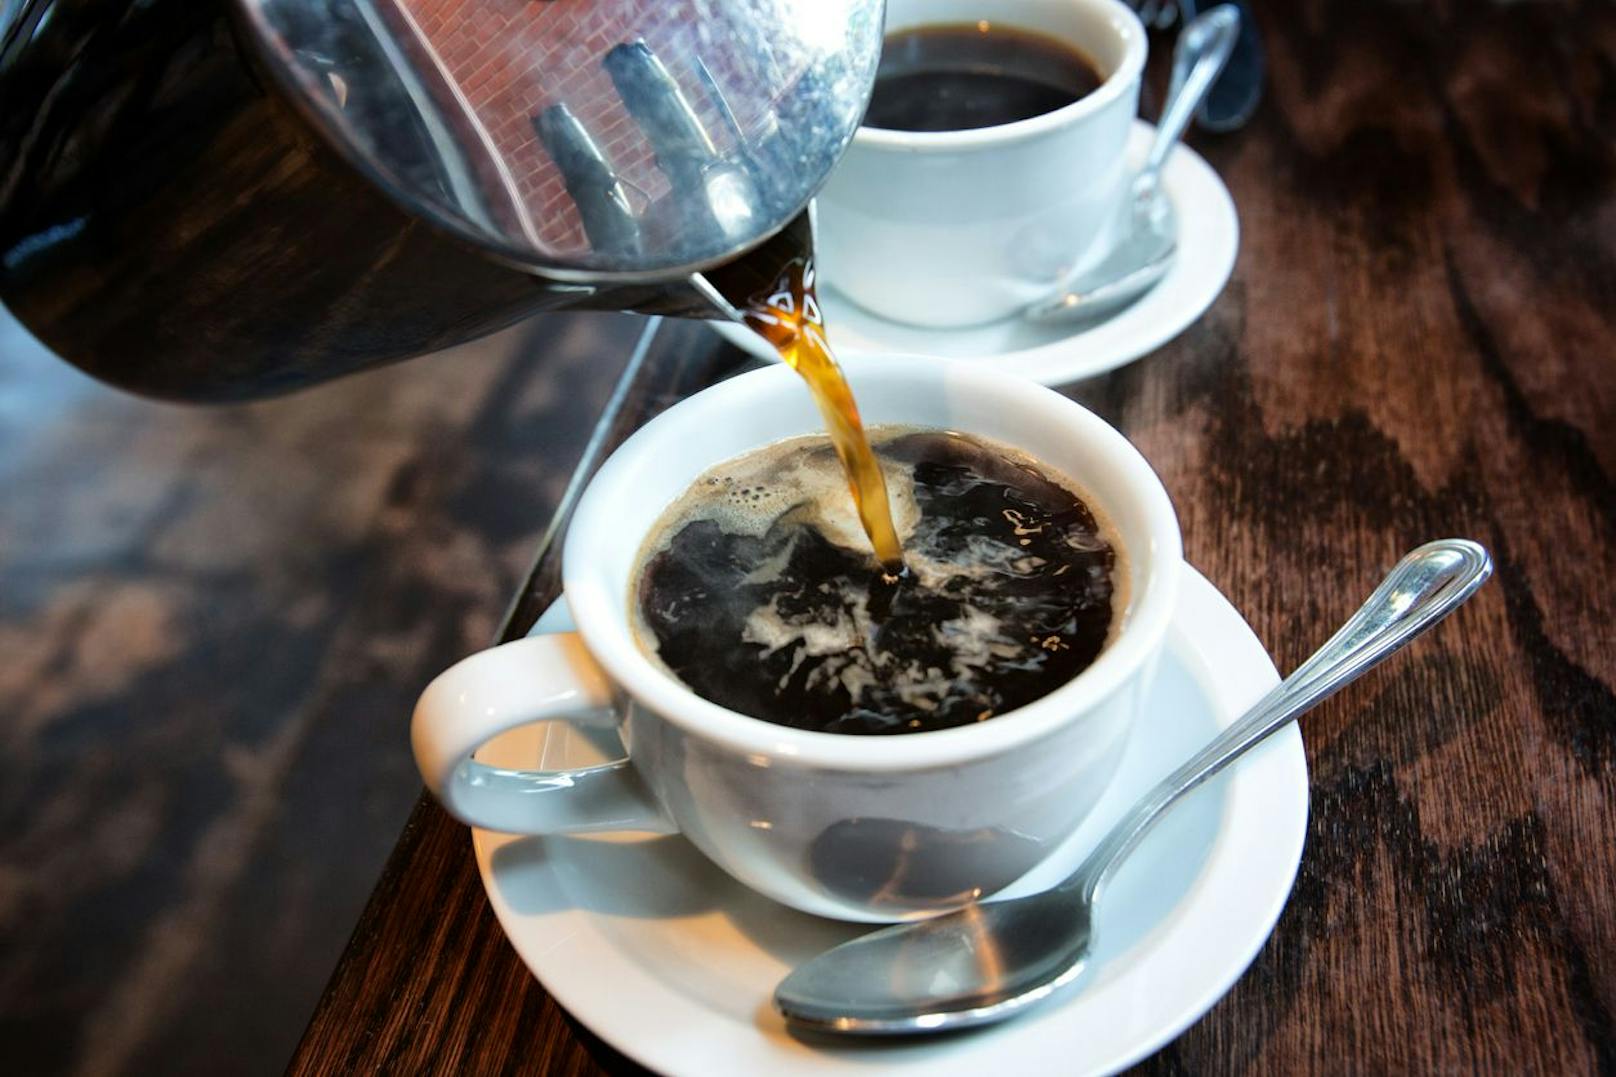 Wer möglichst energieeffizient Kaffee kochen will, nutzt am besten eine Durchdrückkanne (French Press) in Kombination mit einem Wasserkocher.